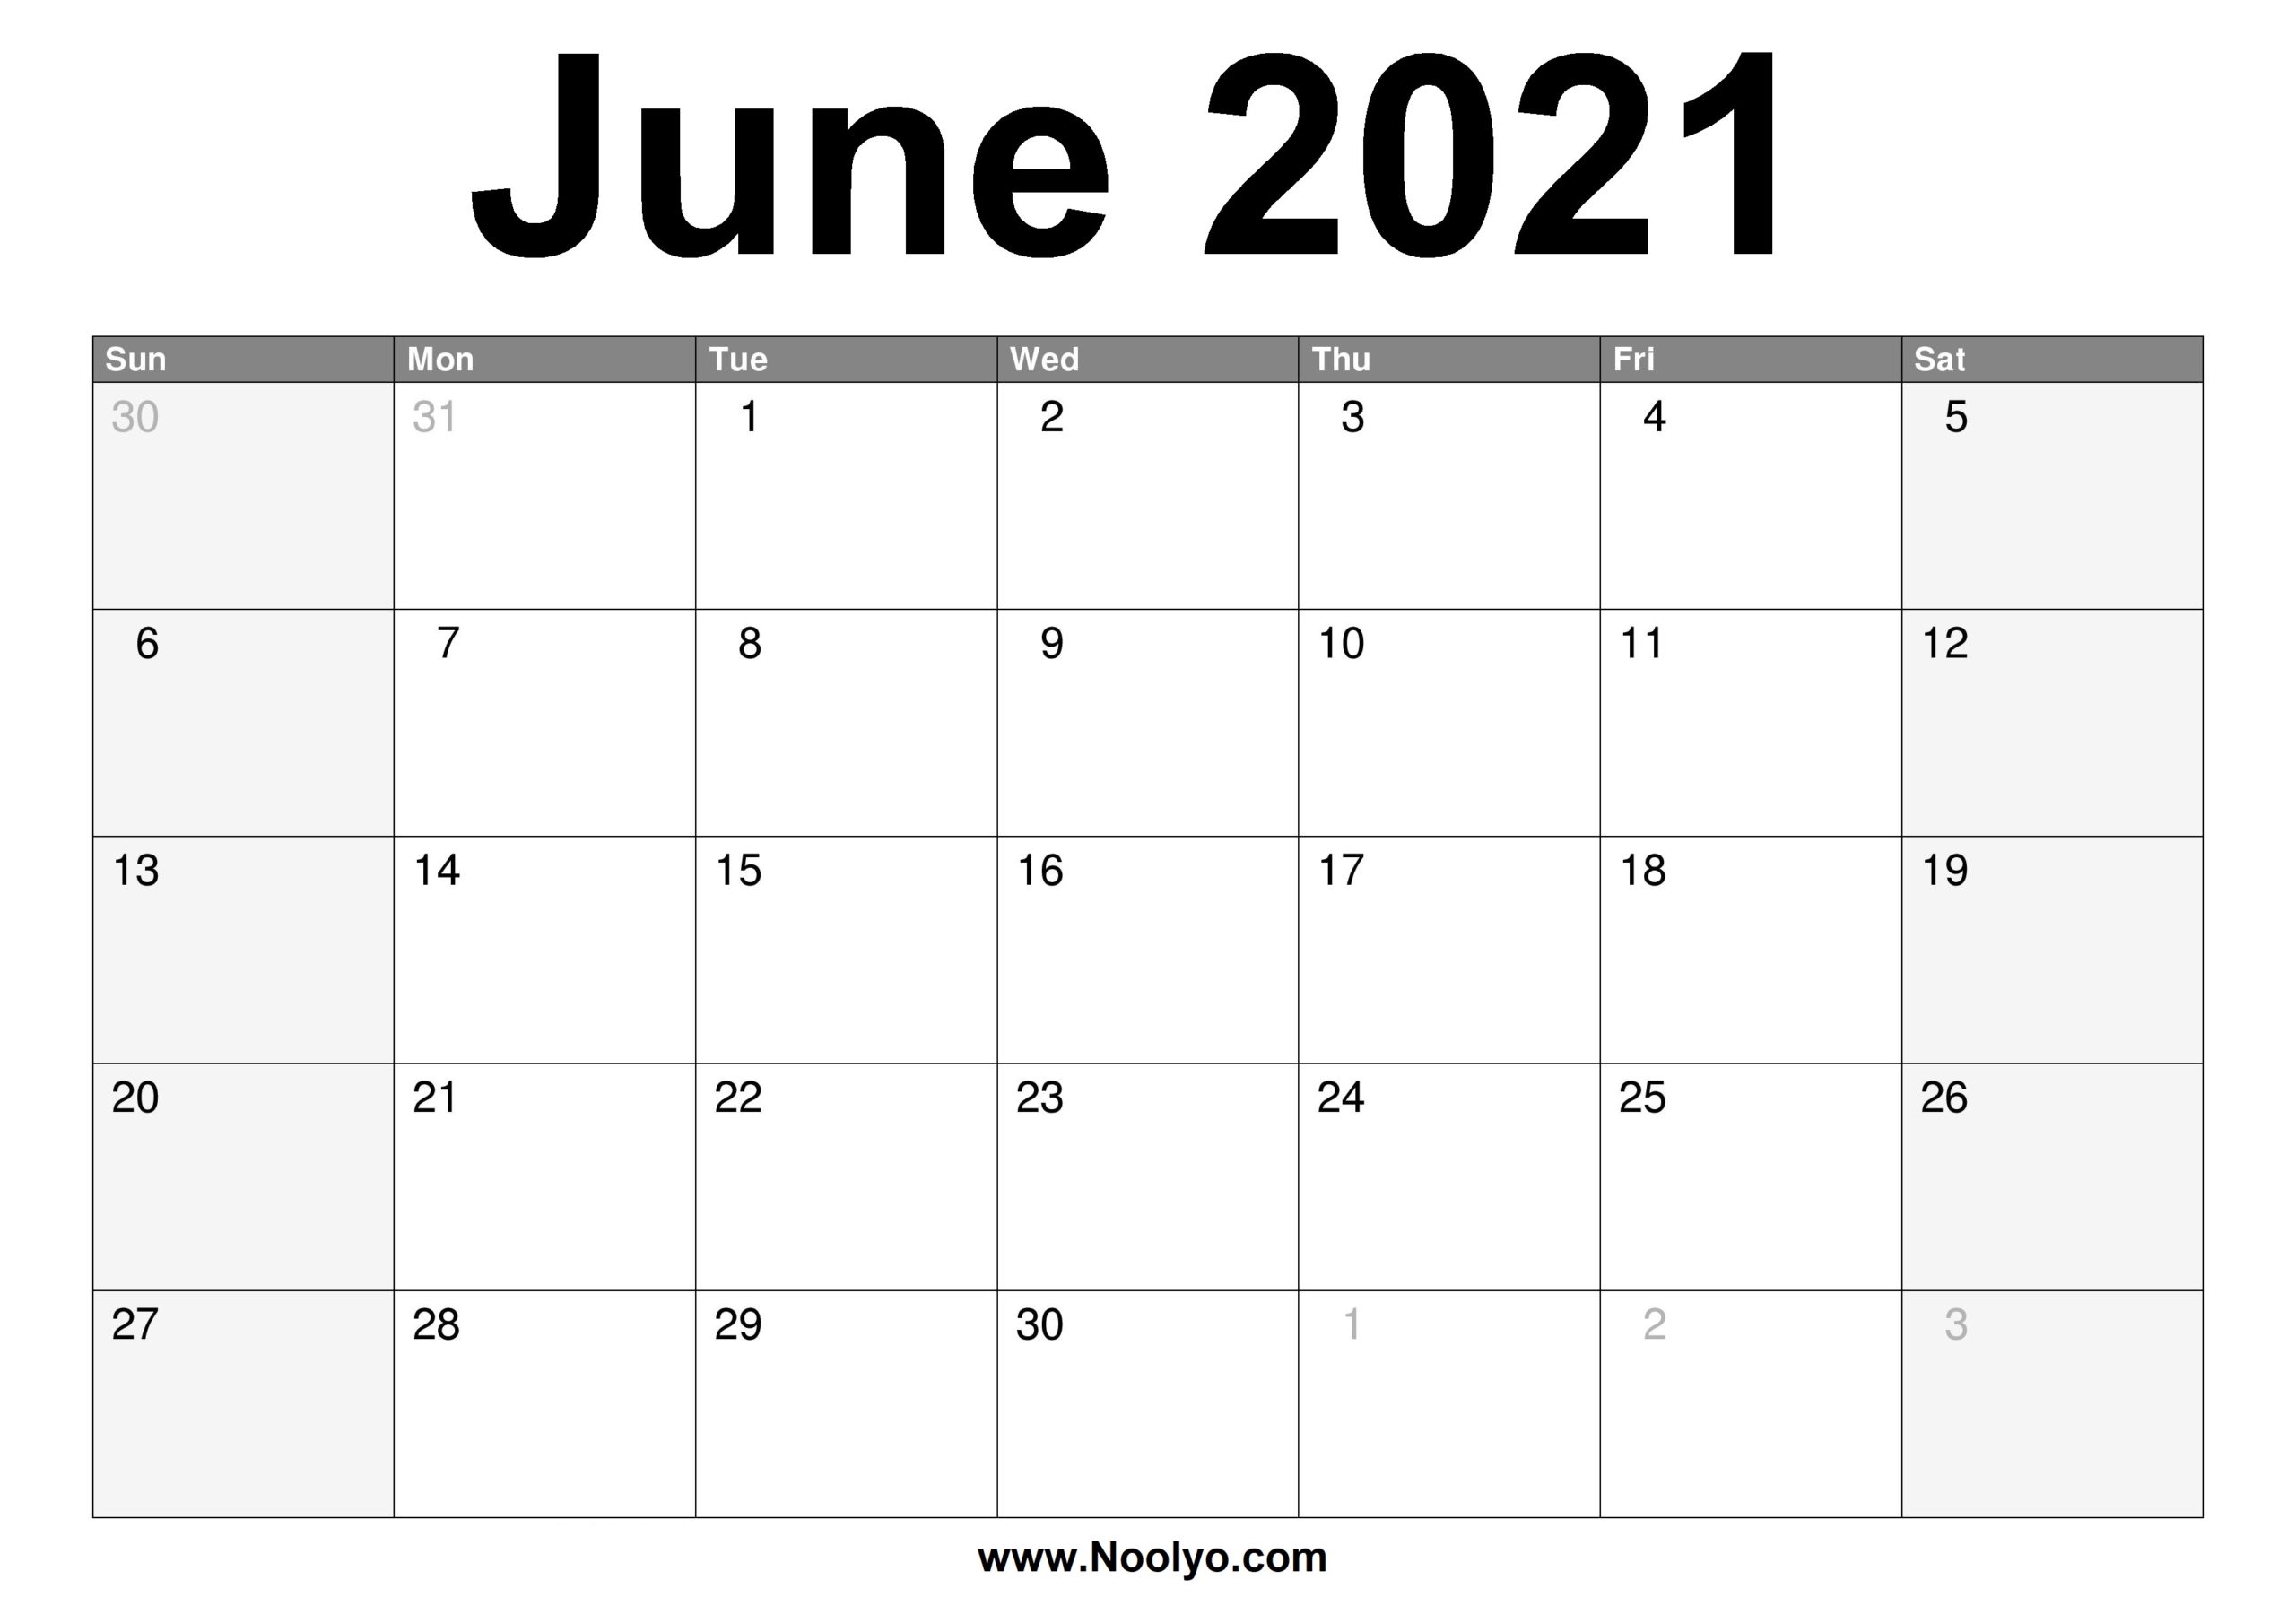 June 2021 Calendar Printable – Free Download